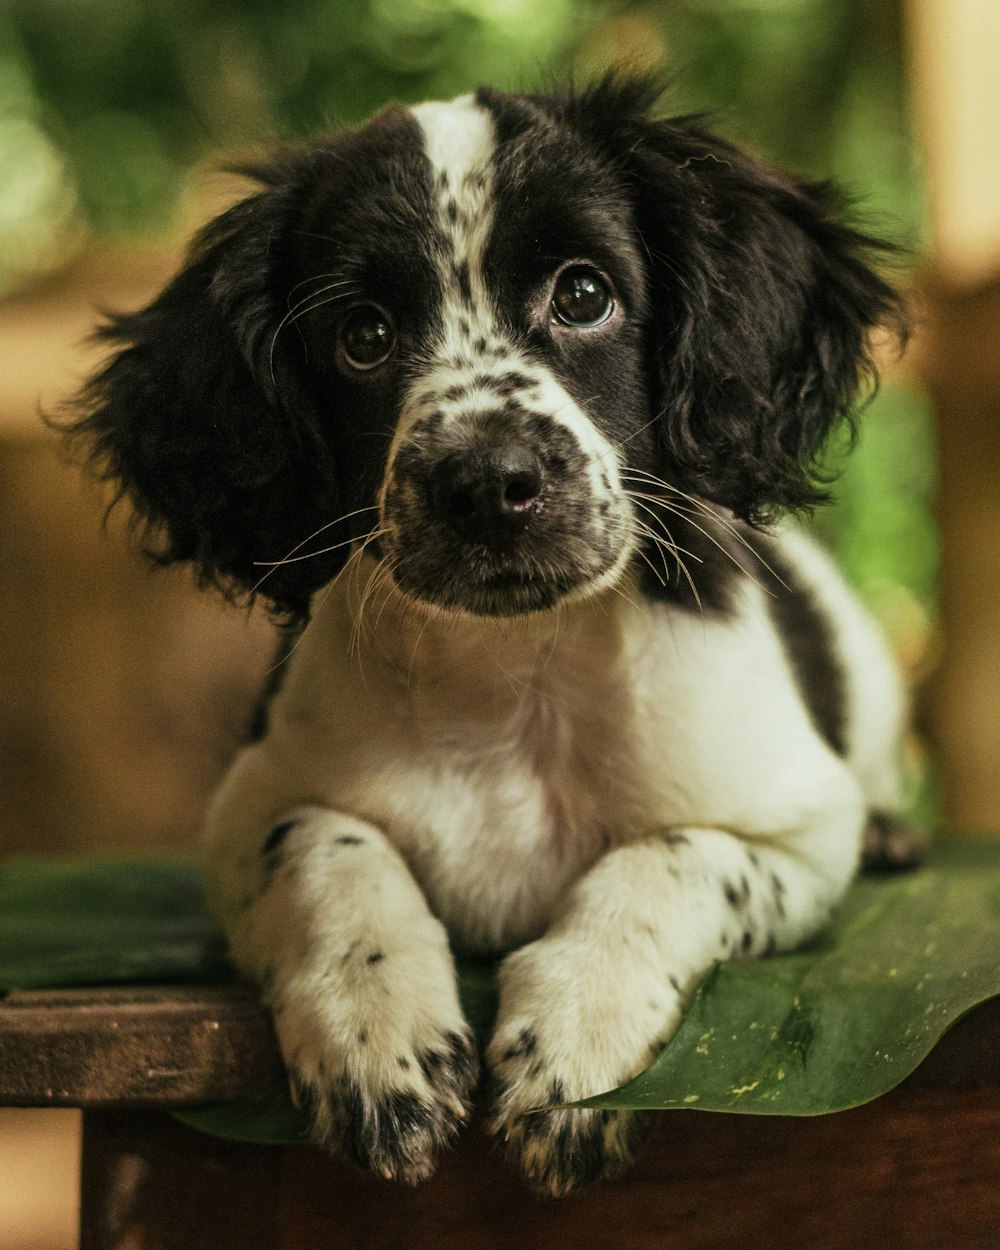 chien à poil court noir et blanc sur feuille verte